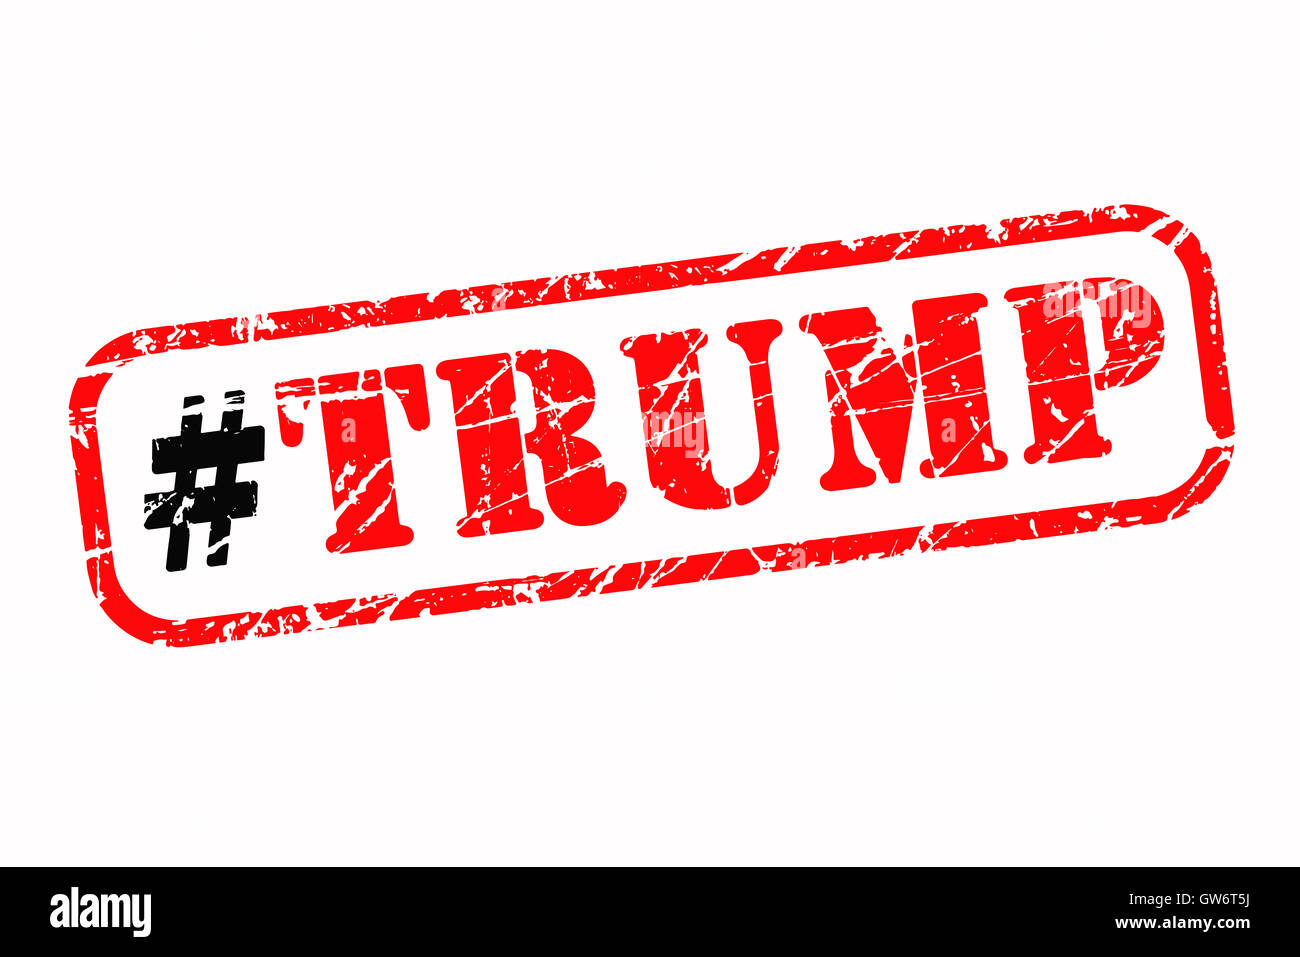 Donald Trump hashtag timbro di gomma illustrazione vettoriale Foto Stock